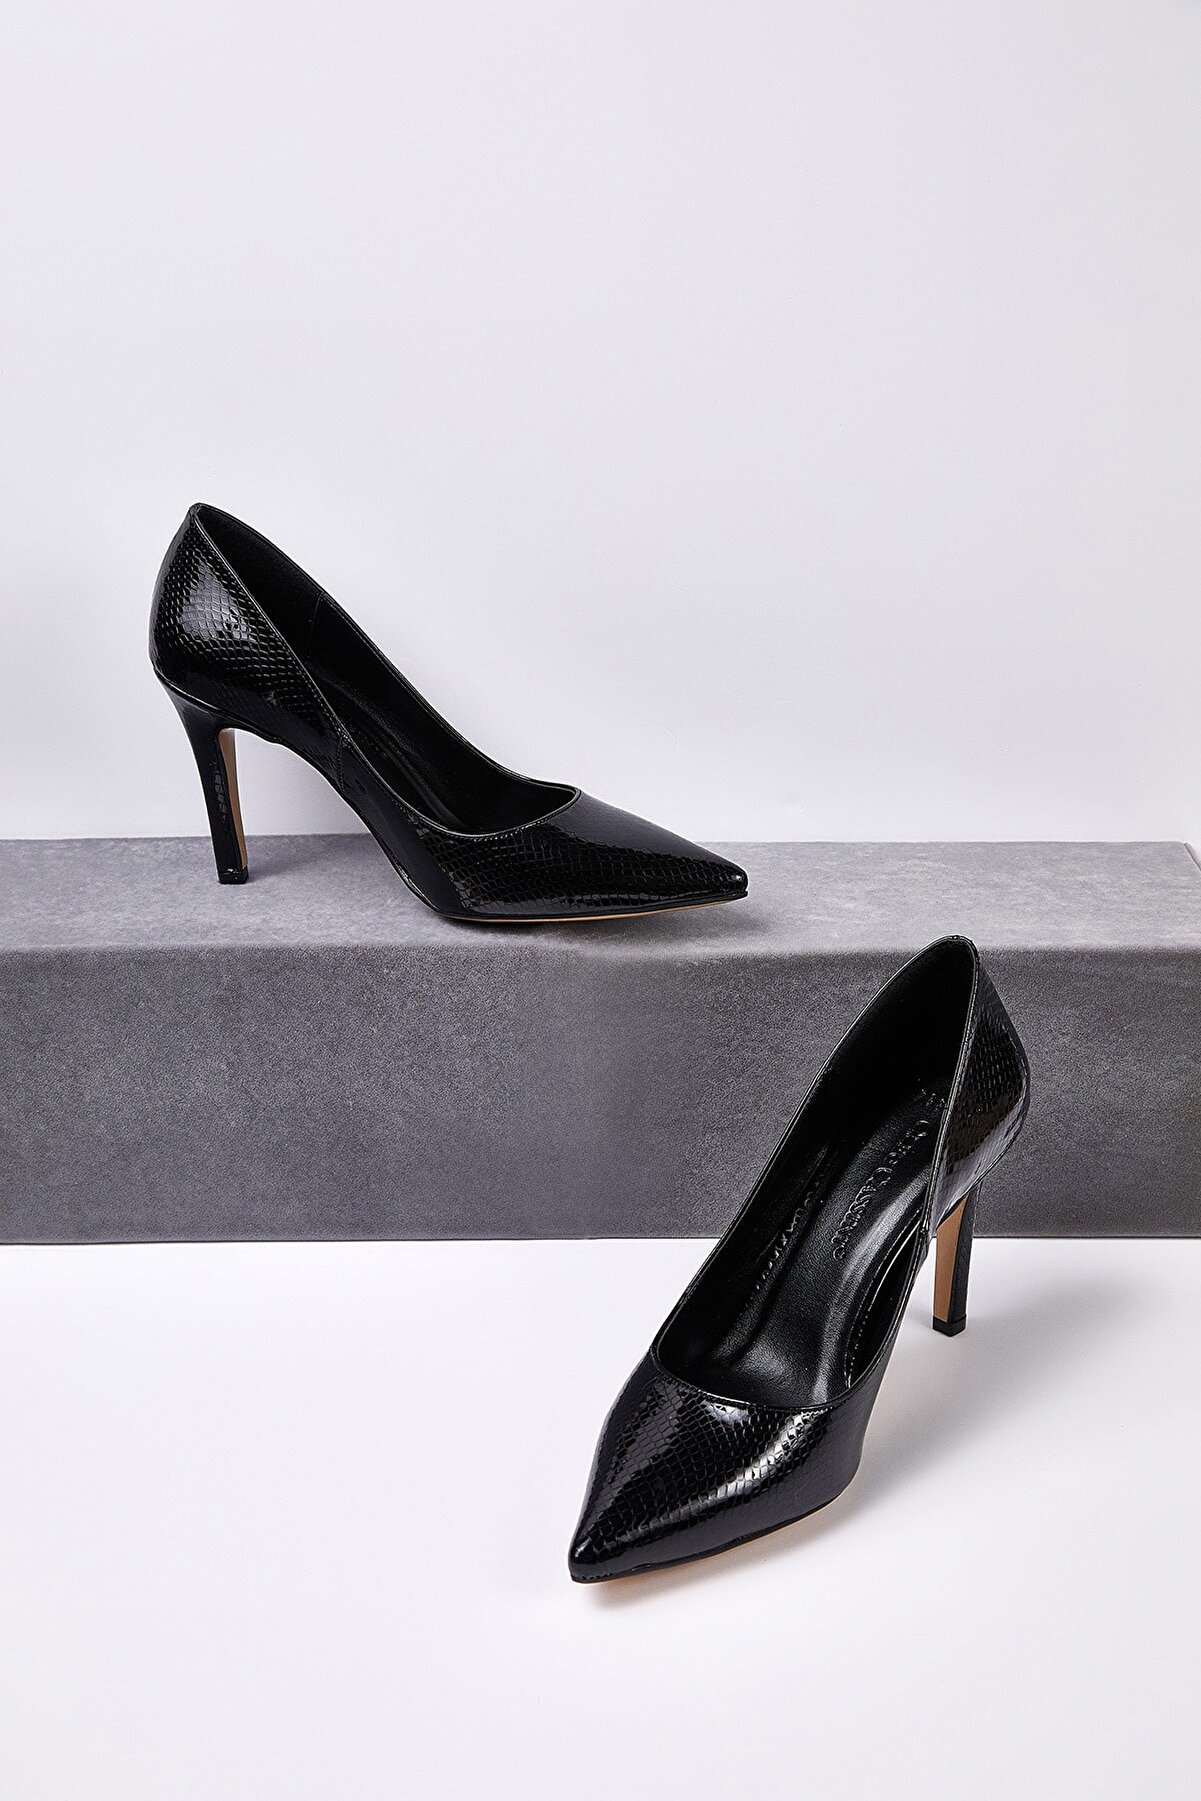 Oleg Cassini Kadın Siyah Klasik Topuklu Abiye Ayakkabısı JULIA